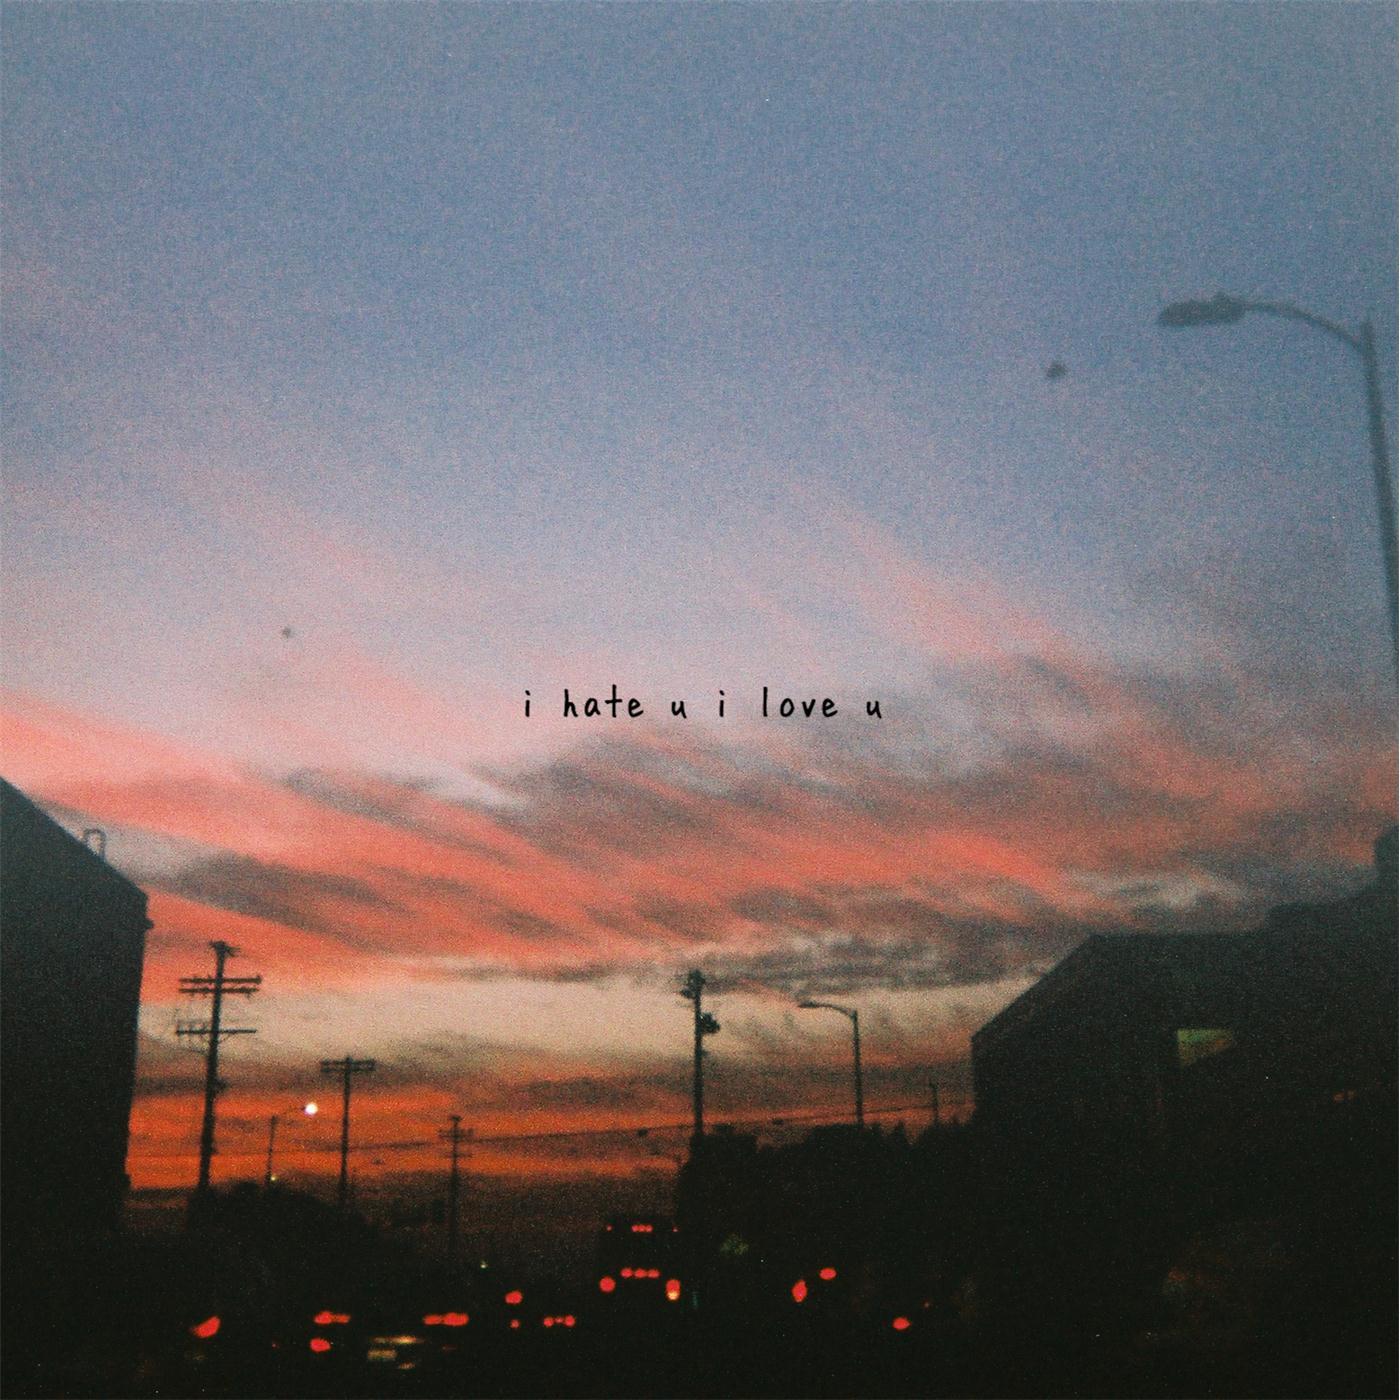 gnash - I Hate U I Love U (feat. Olivia O'Brien)